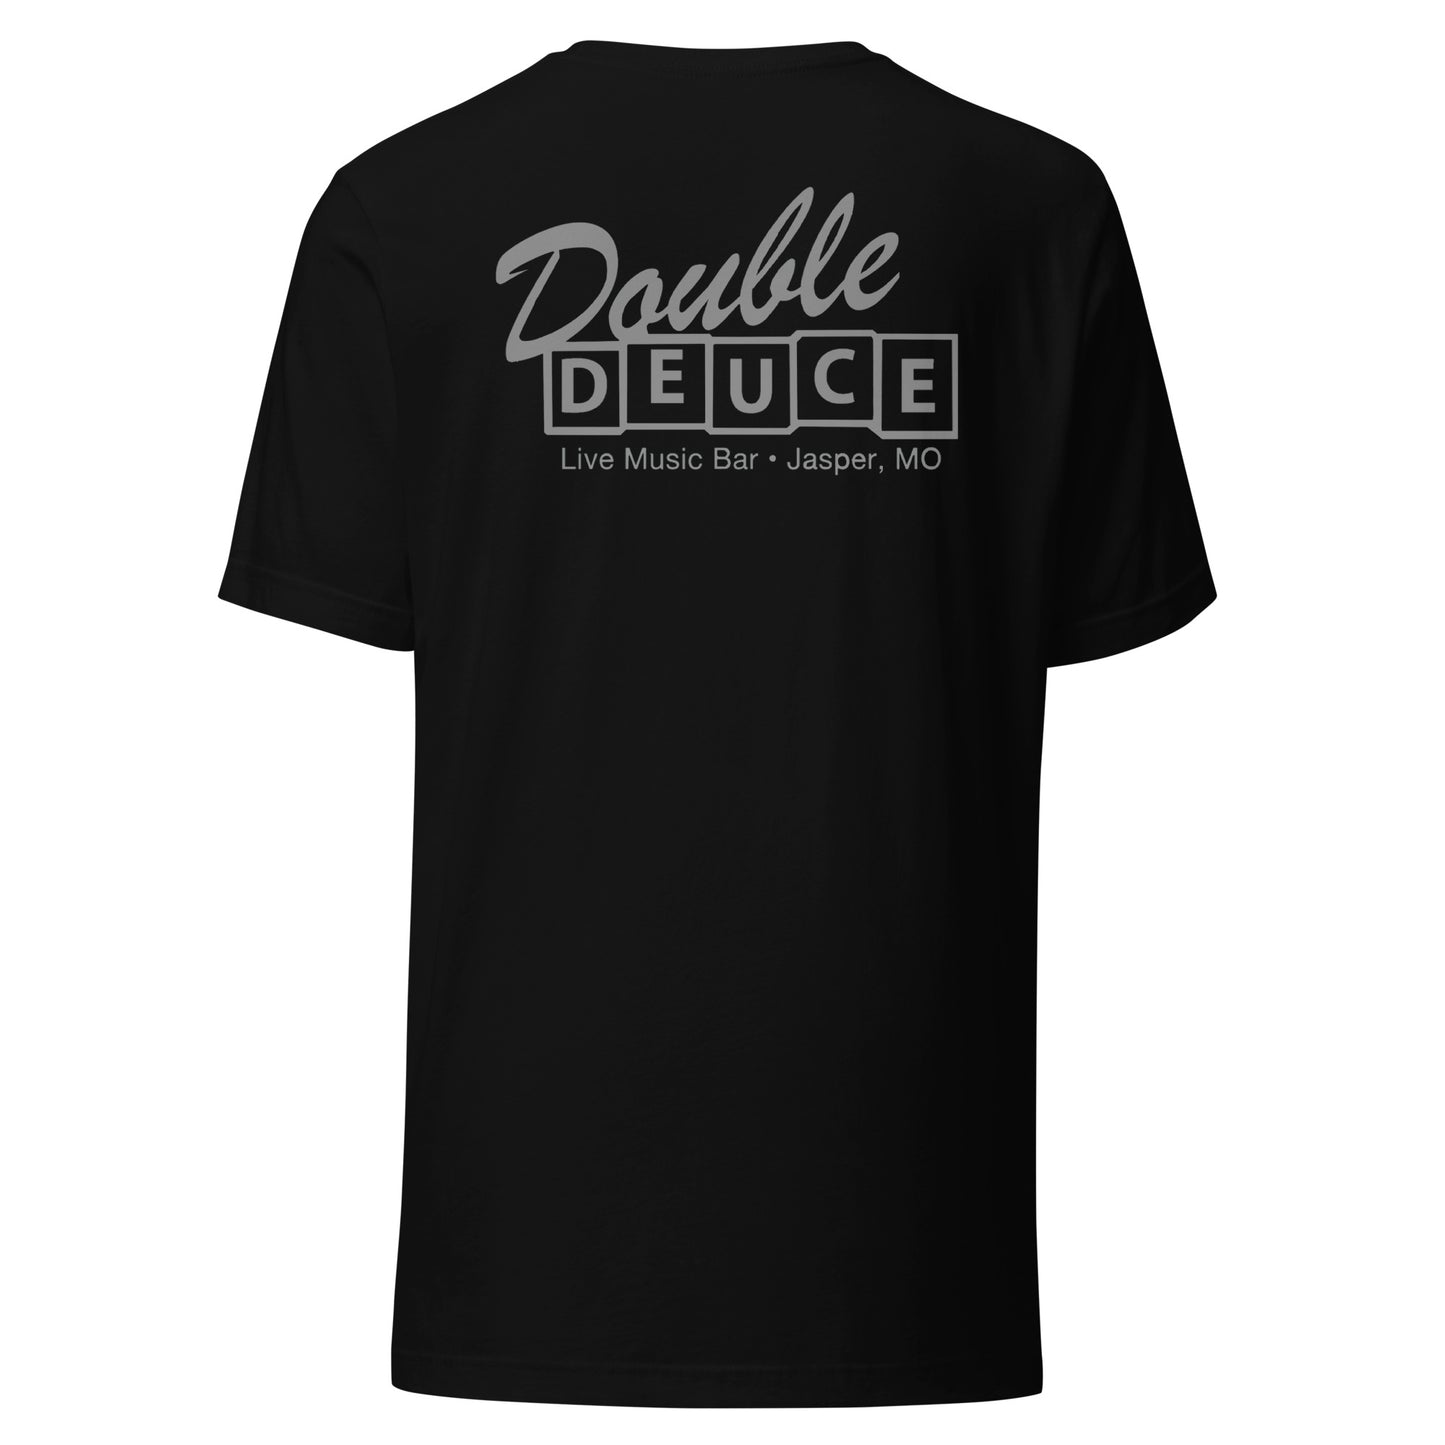 DOUBLE DUECE GRAY LETTERING Unisex T-shirt